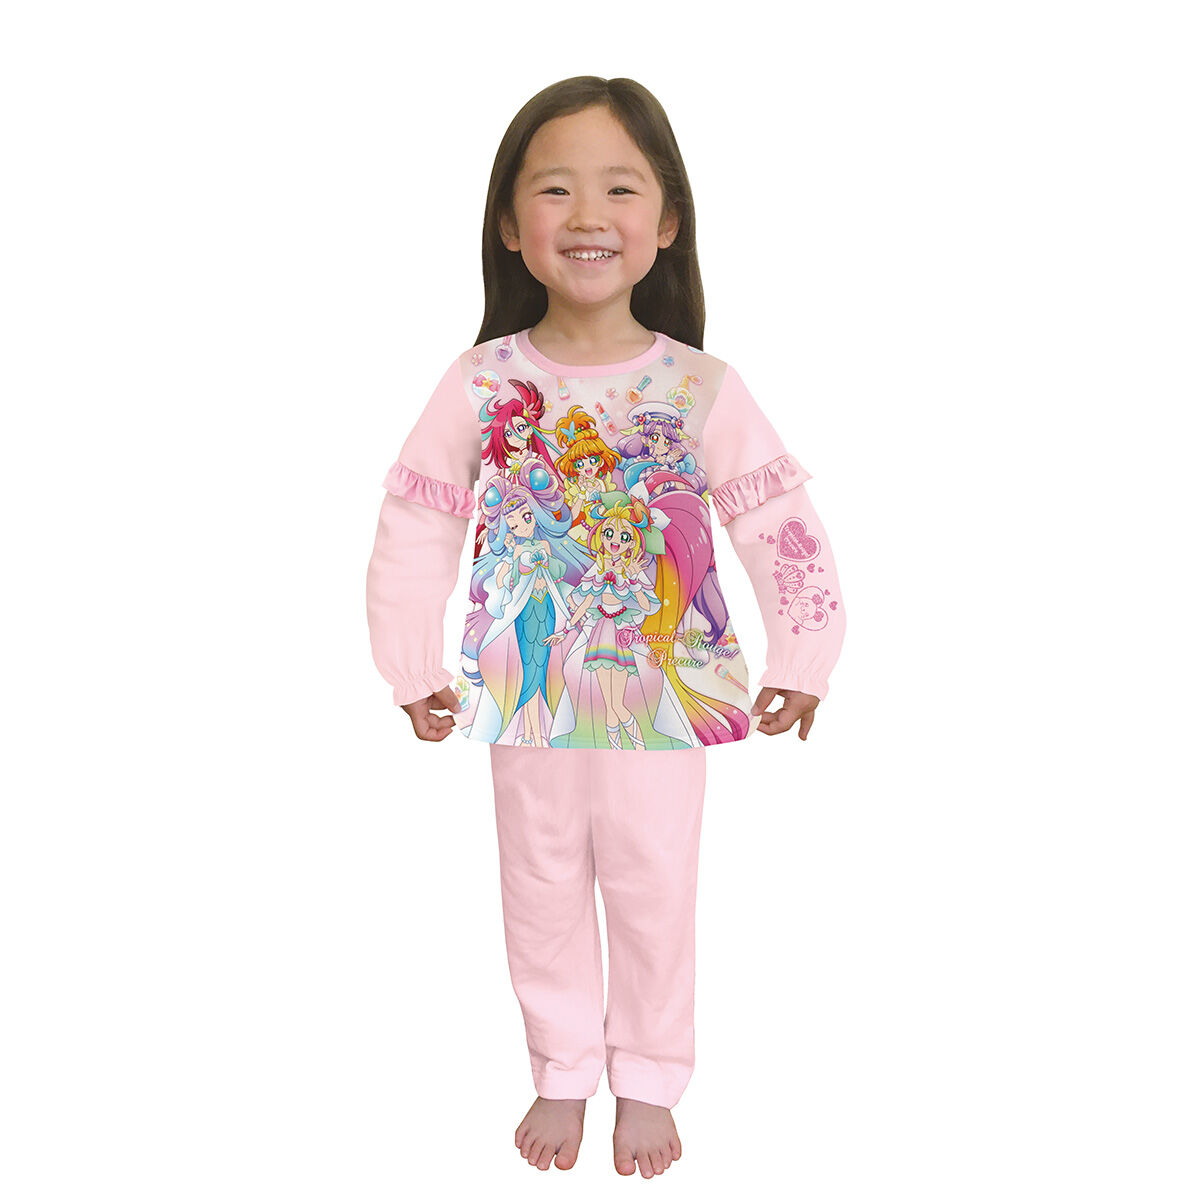 トロピカル ジュ プリキュア 寝ても覚めても光るパジャマ トロピカル ジュ プリキュア ファッション アクセサリー バンダイナムコグループ公式通販サイト